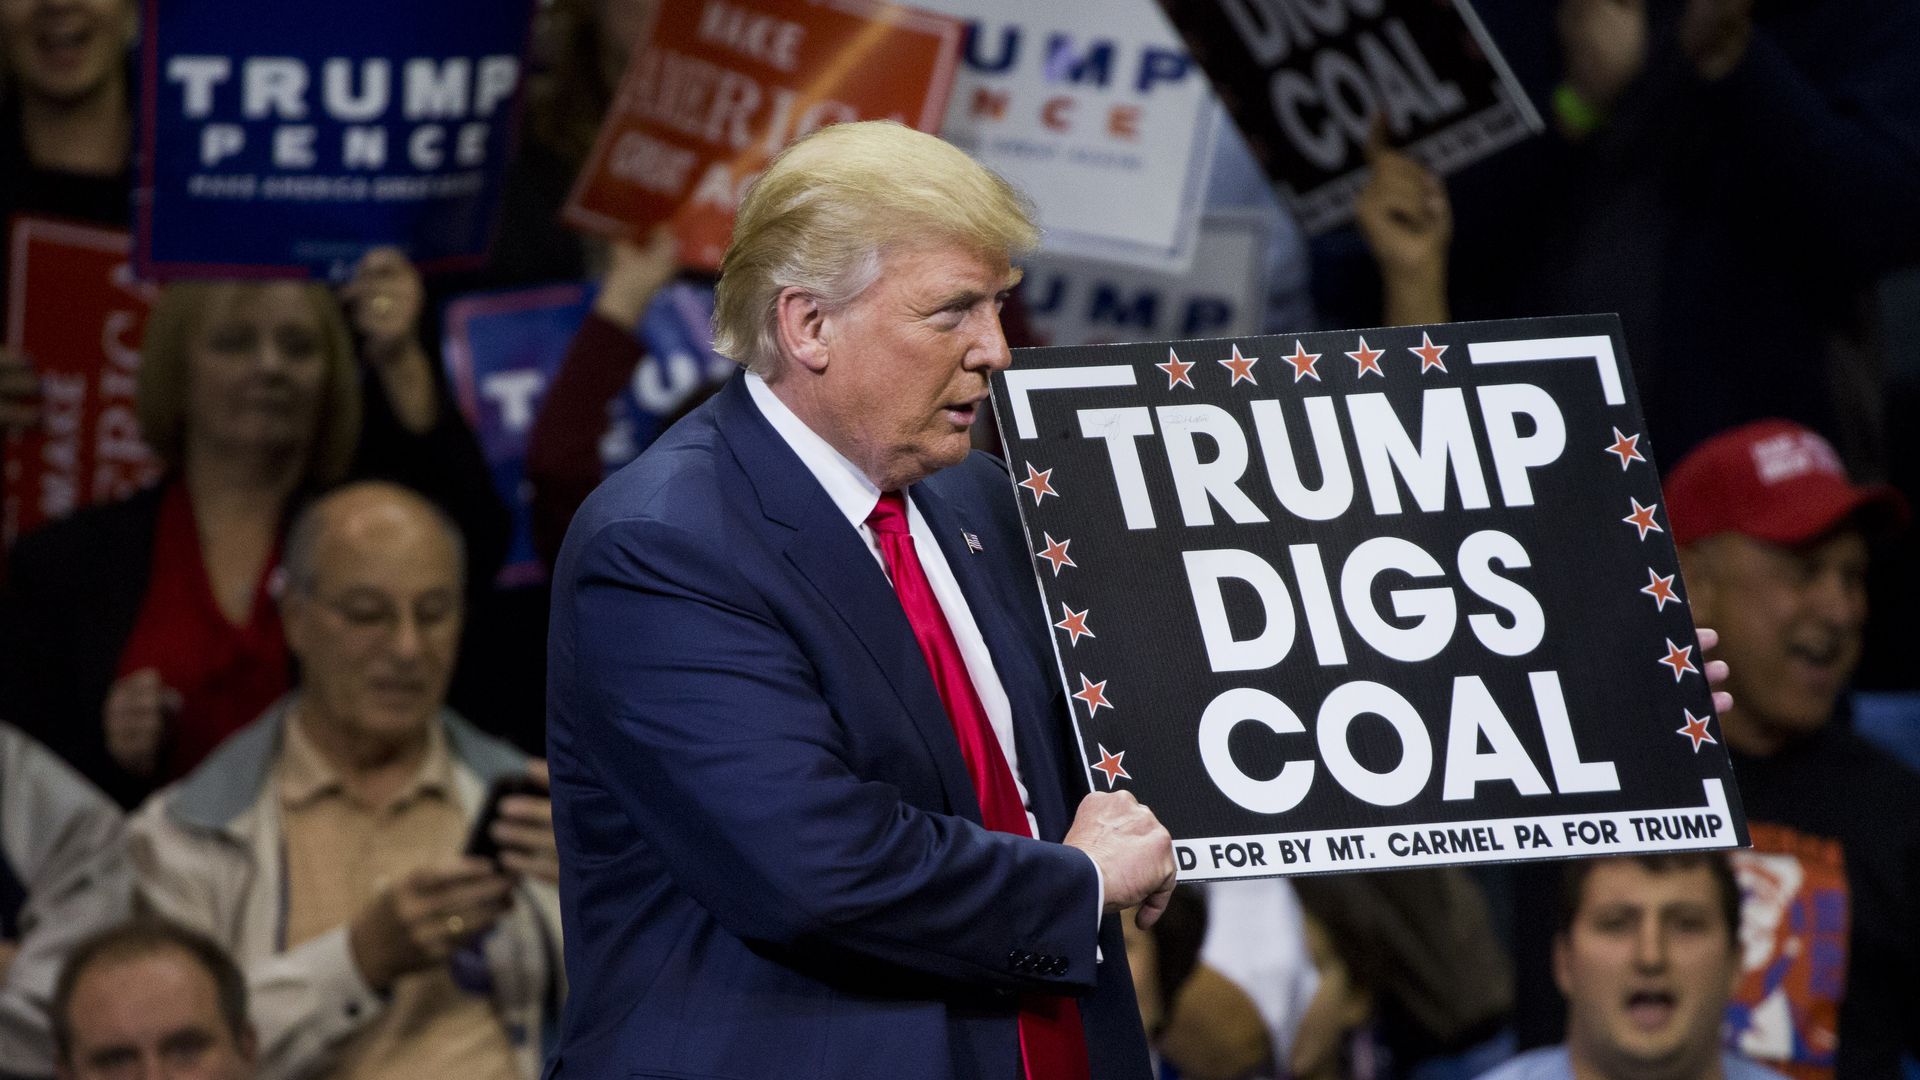 Trump holding a "Trump digs coal" sign